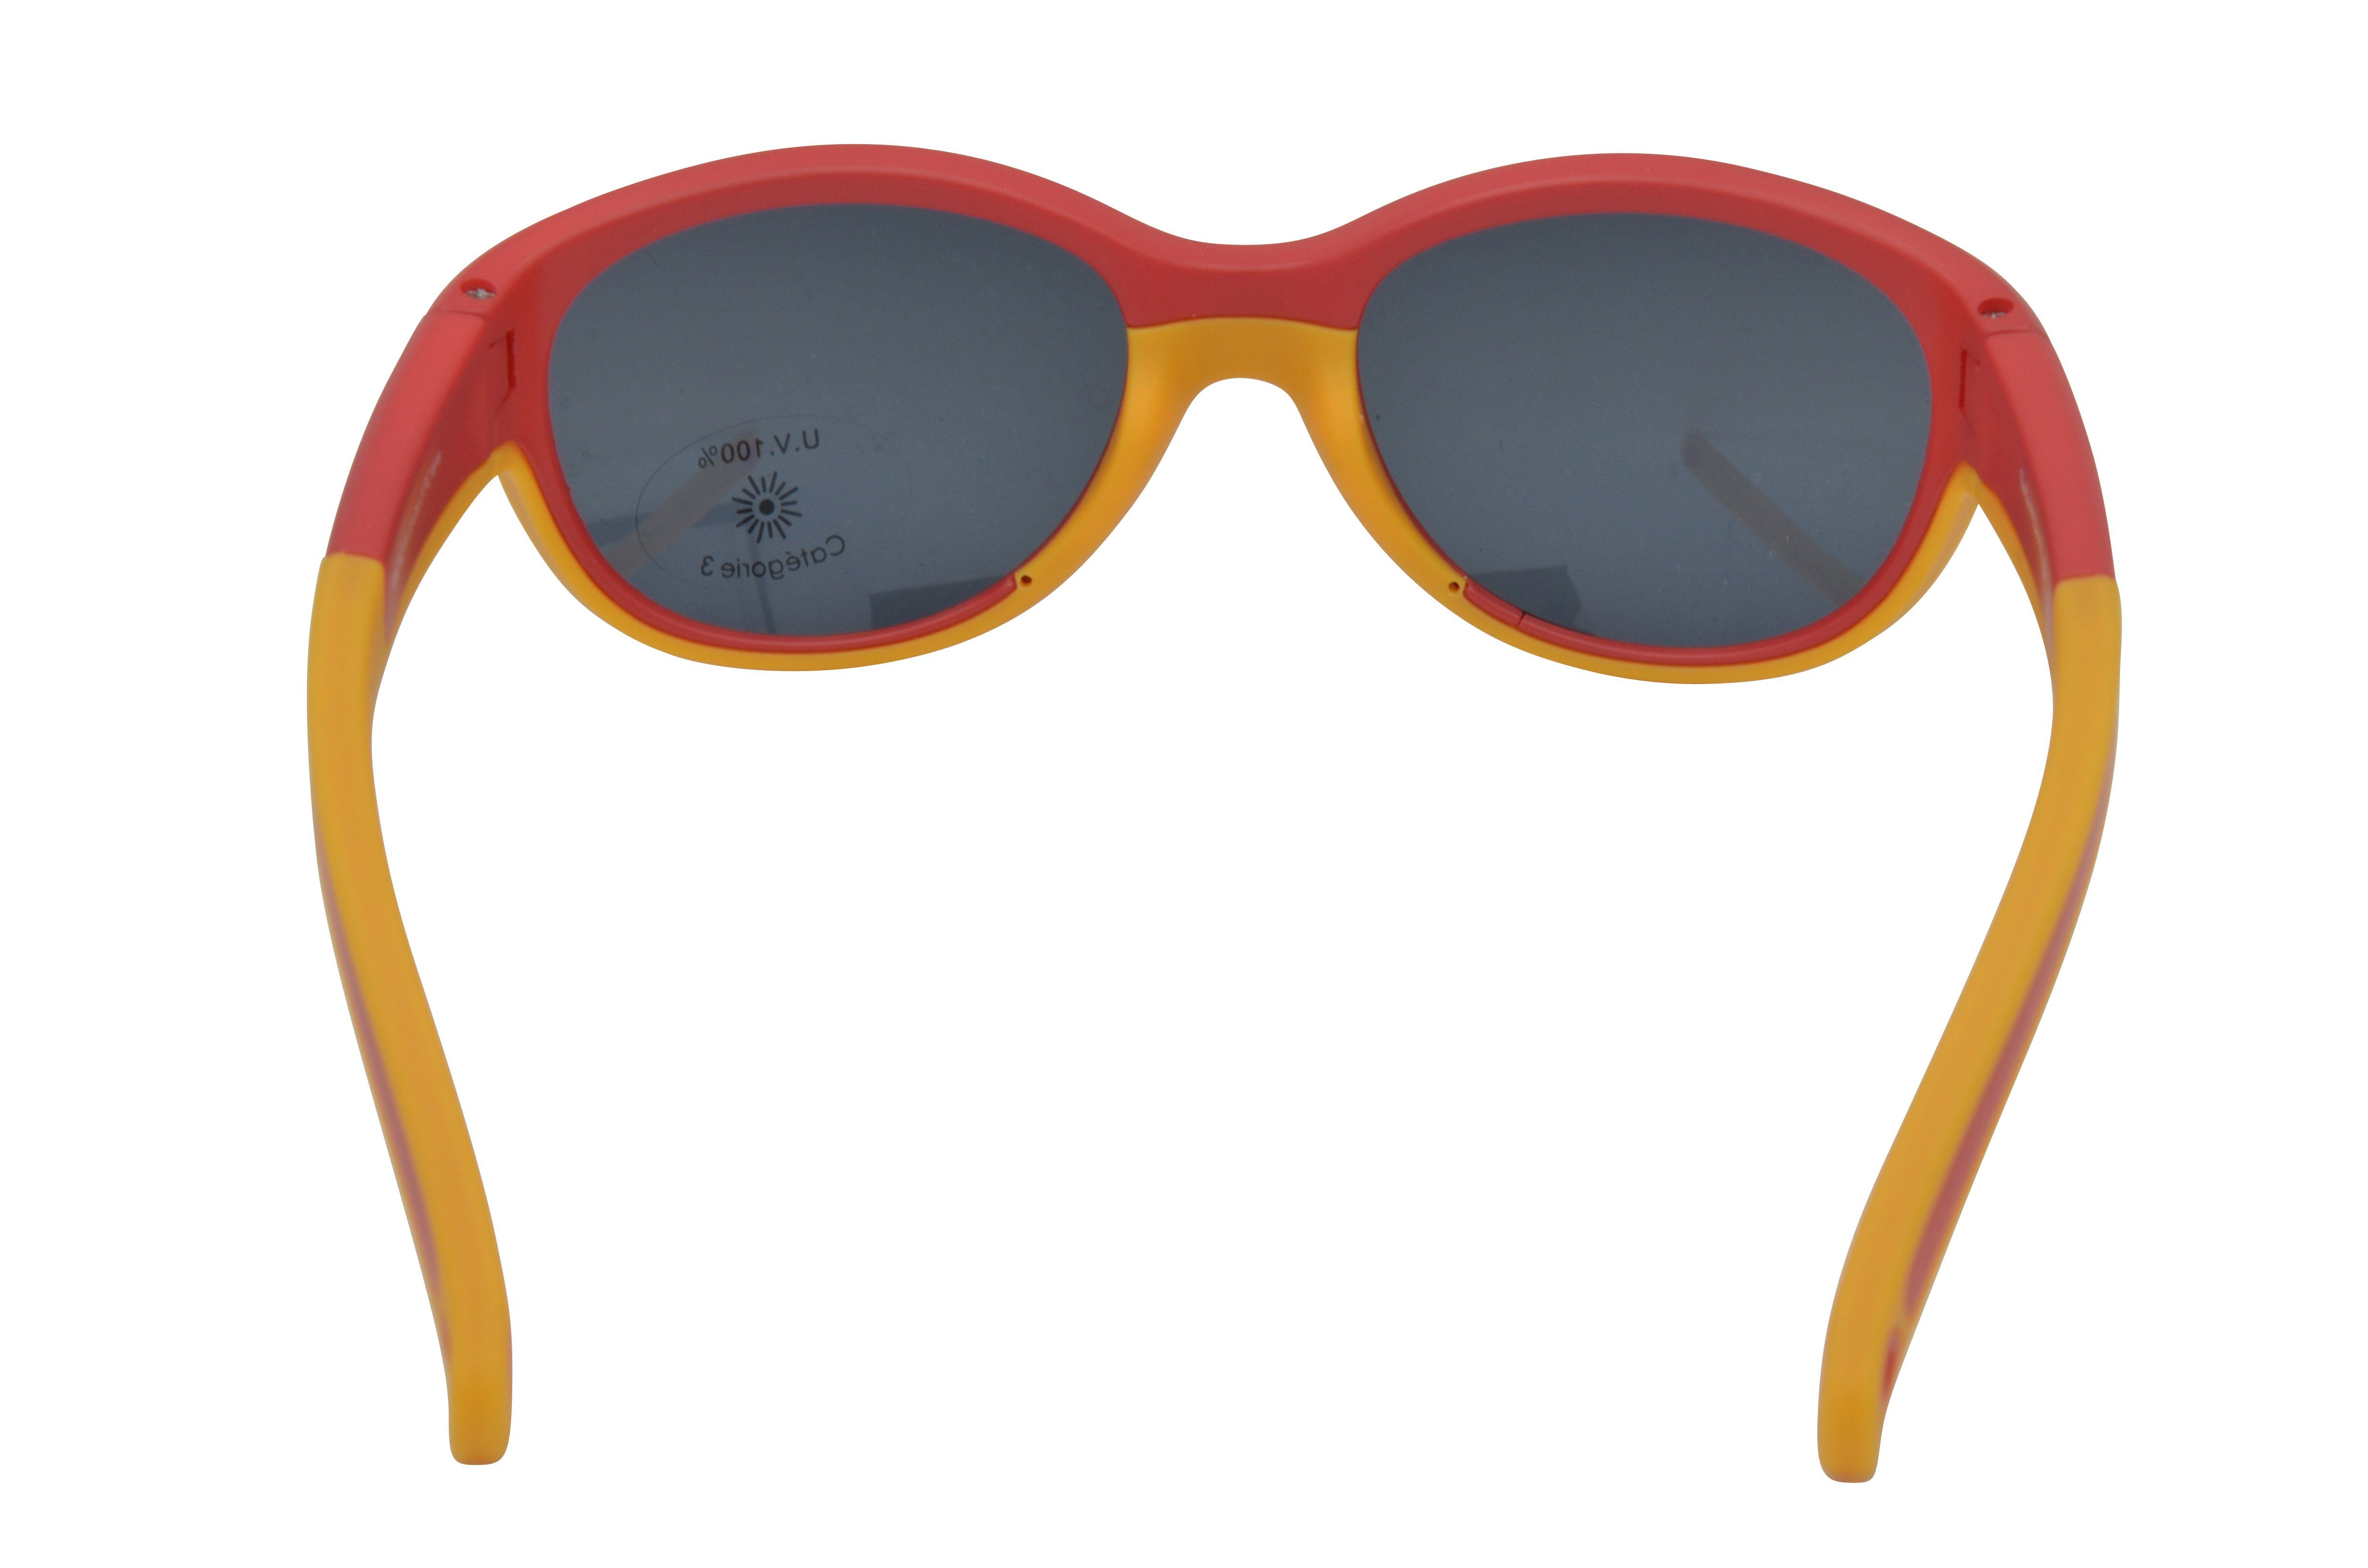 Gamswild Sonnenbrille WK7421 pink, incl. mintgrün, kids Jungen Kleinkindbrille Jahre Unisex, GAMSKIDS Kinderbrille rot-orange Mädchen Brillenband 2-5